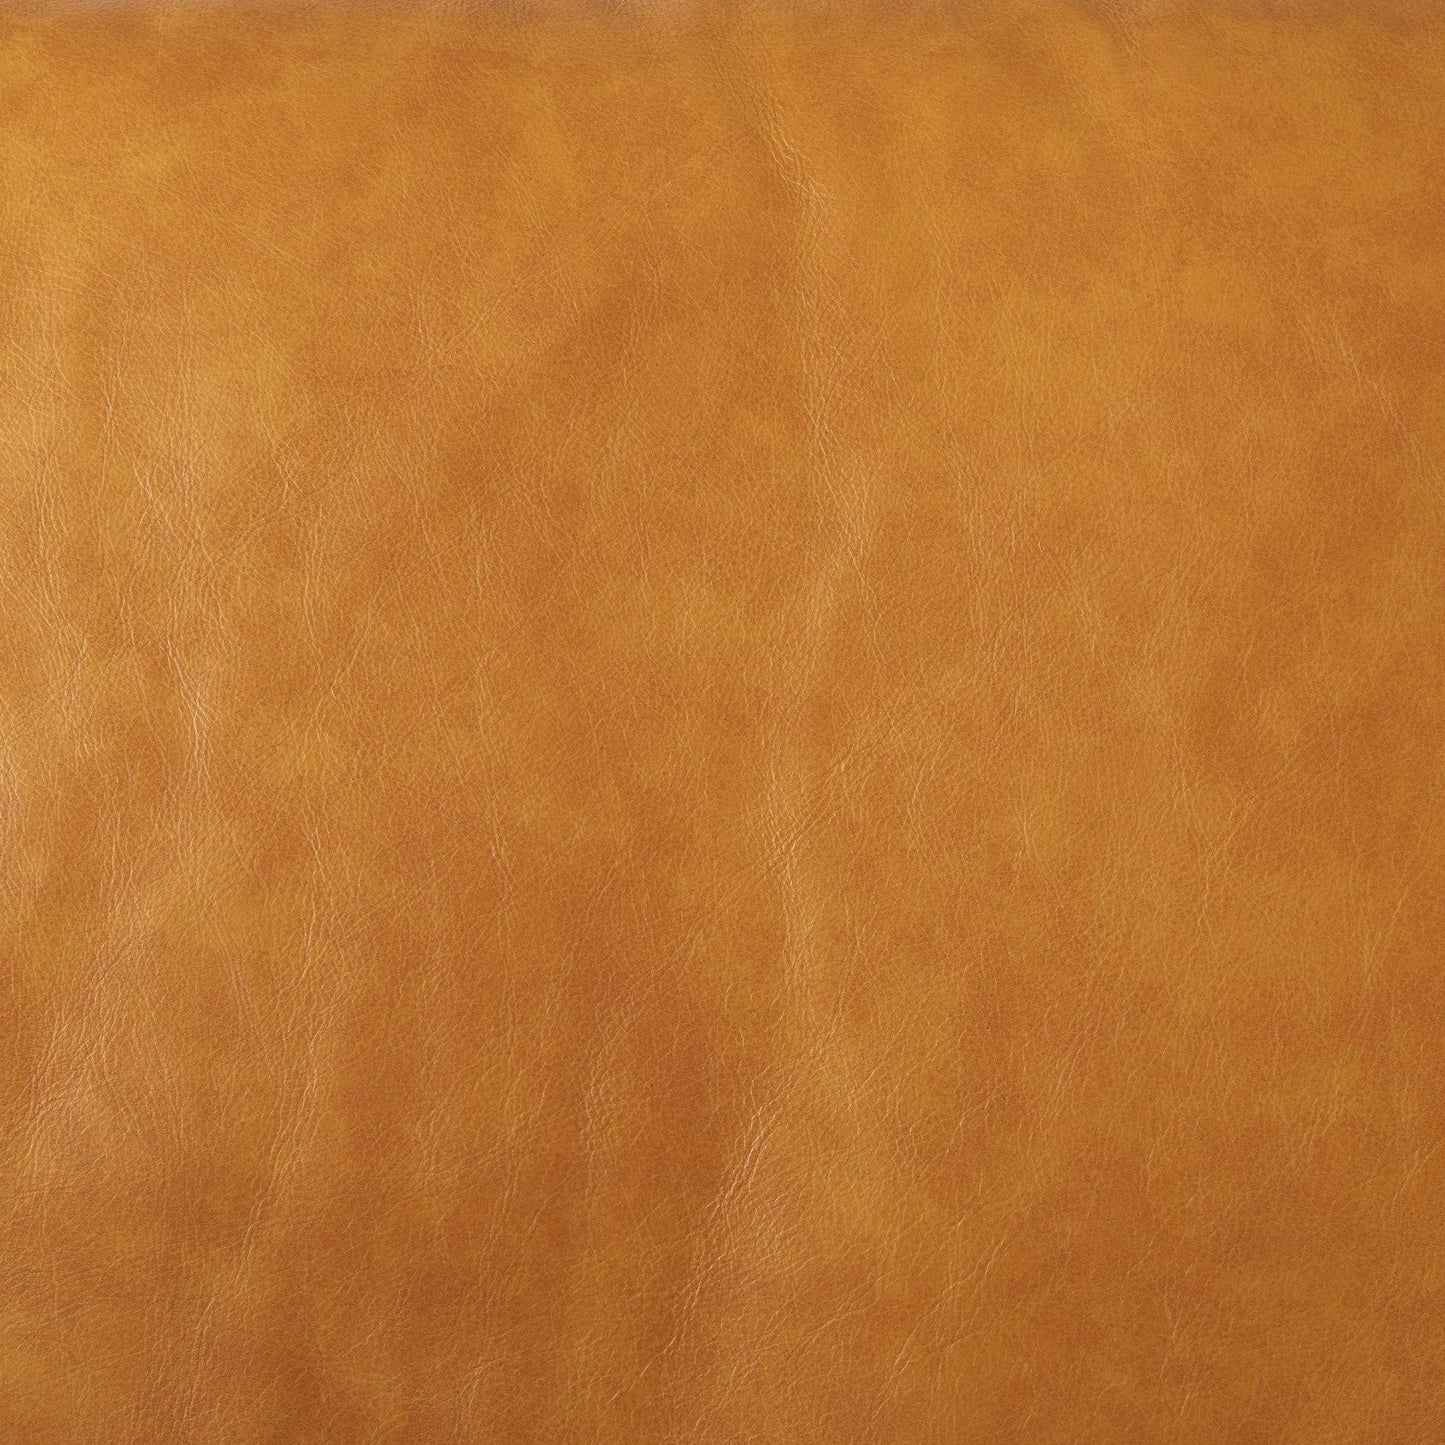 Svend 88.0L x 38.0W x 34.0H Tan Leather Sofa